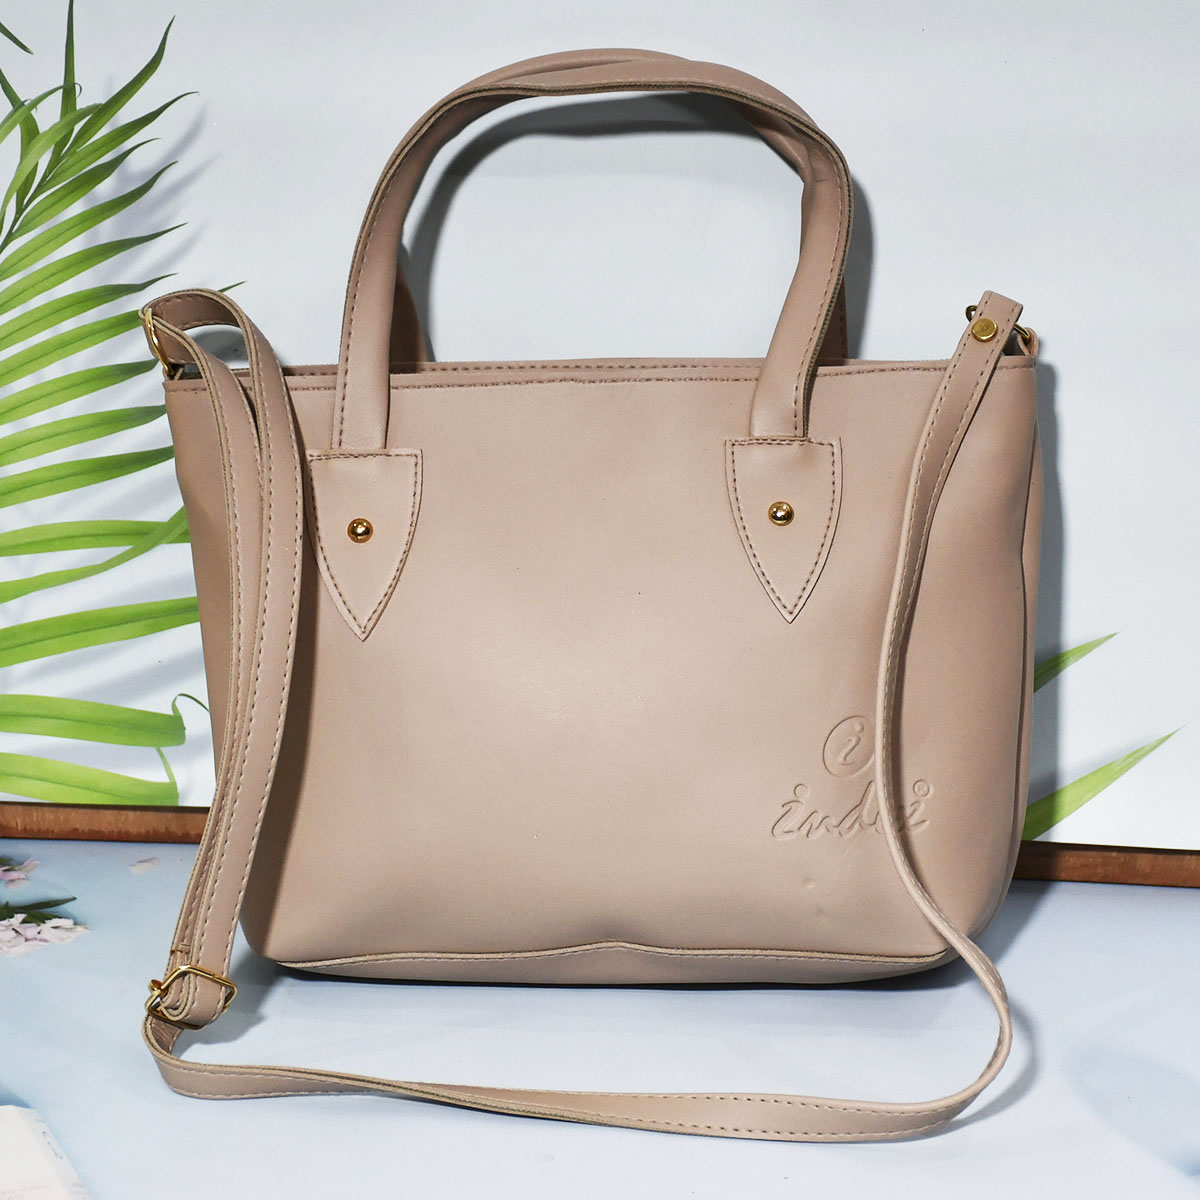 Unique Shape Handbag For Women | Boxy Sling Bag Fancy Purse For Girls -  Shireen Women's Handbags